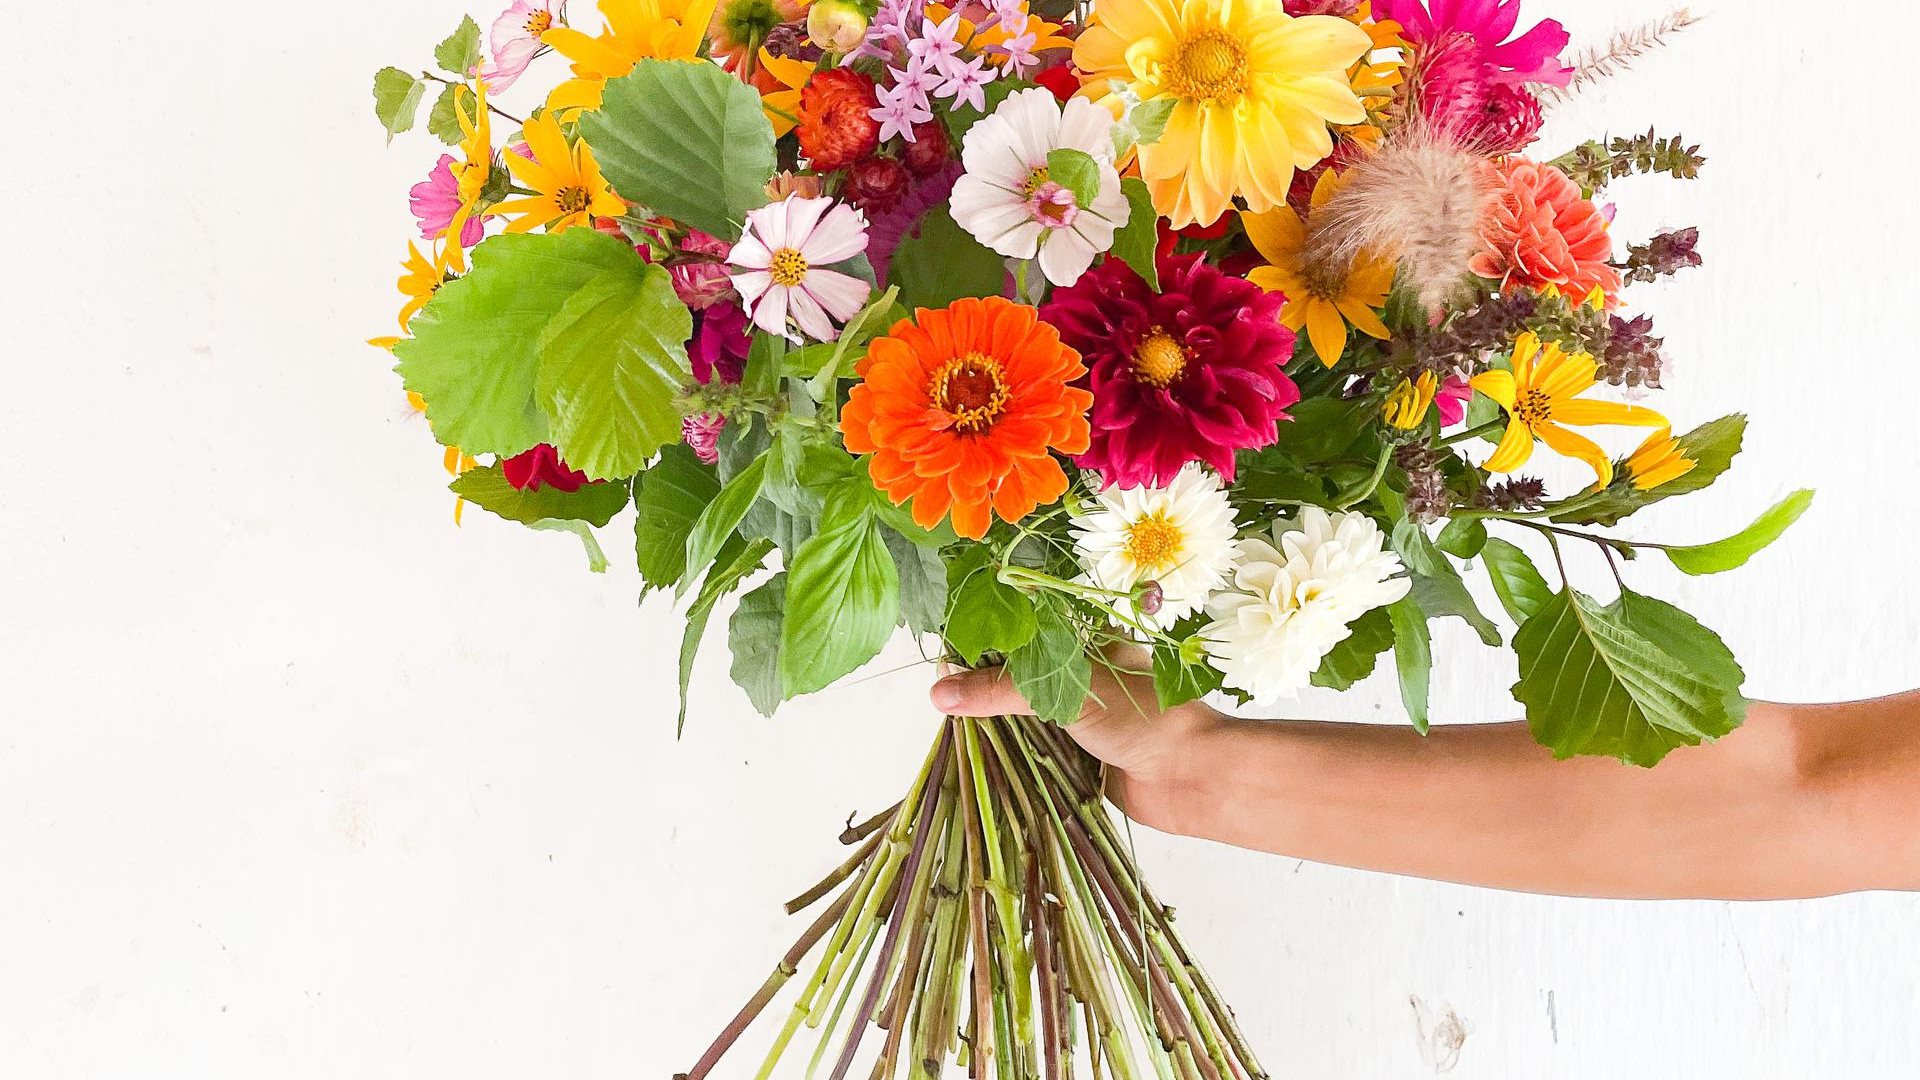 A FLO lançou um serviço de subscrição de flores frescas, biológicas e de época (corra porque não duram para sempre)